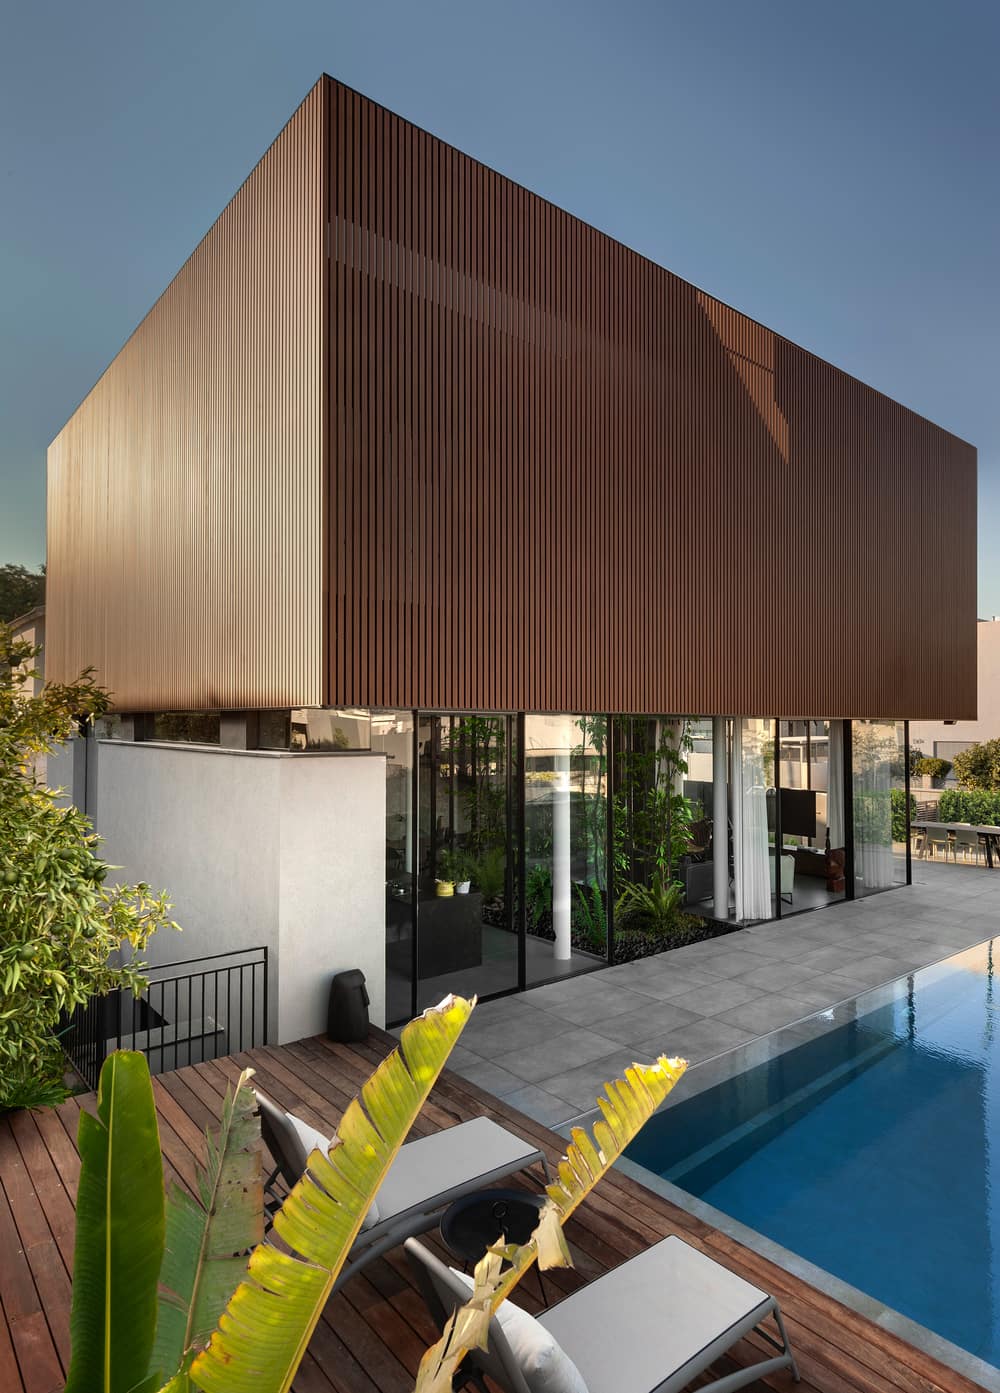 The Floating Box House by Israelevitz Architects